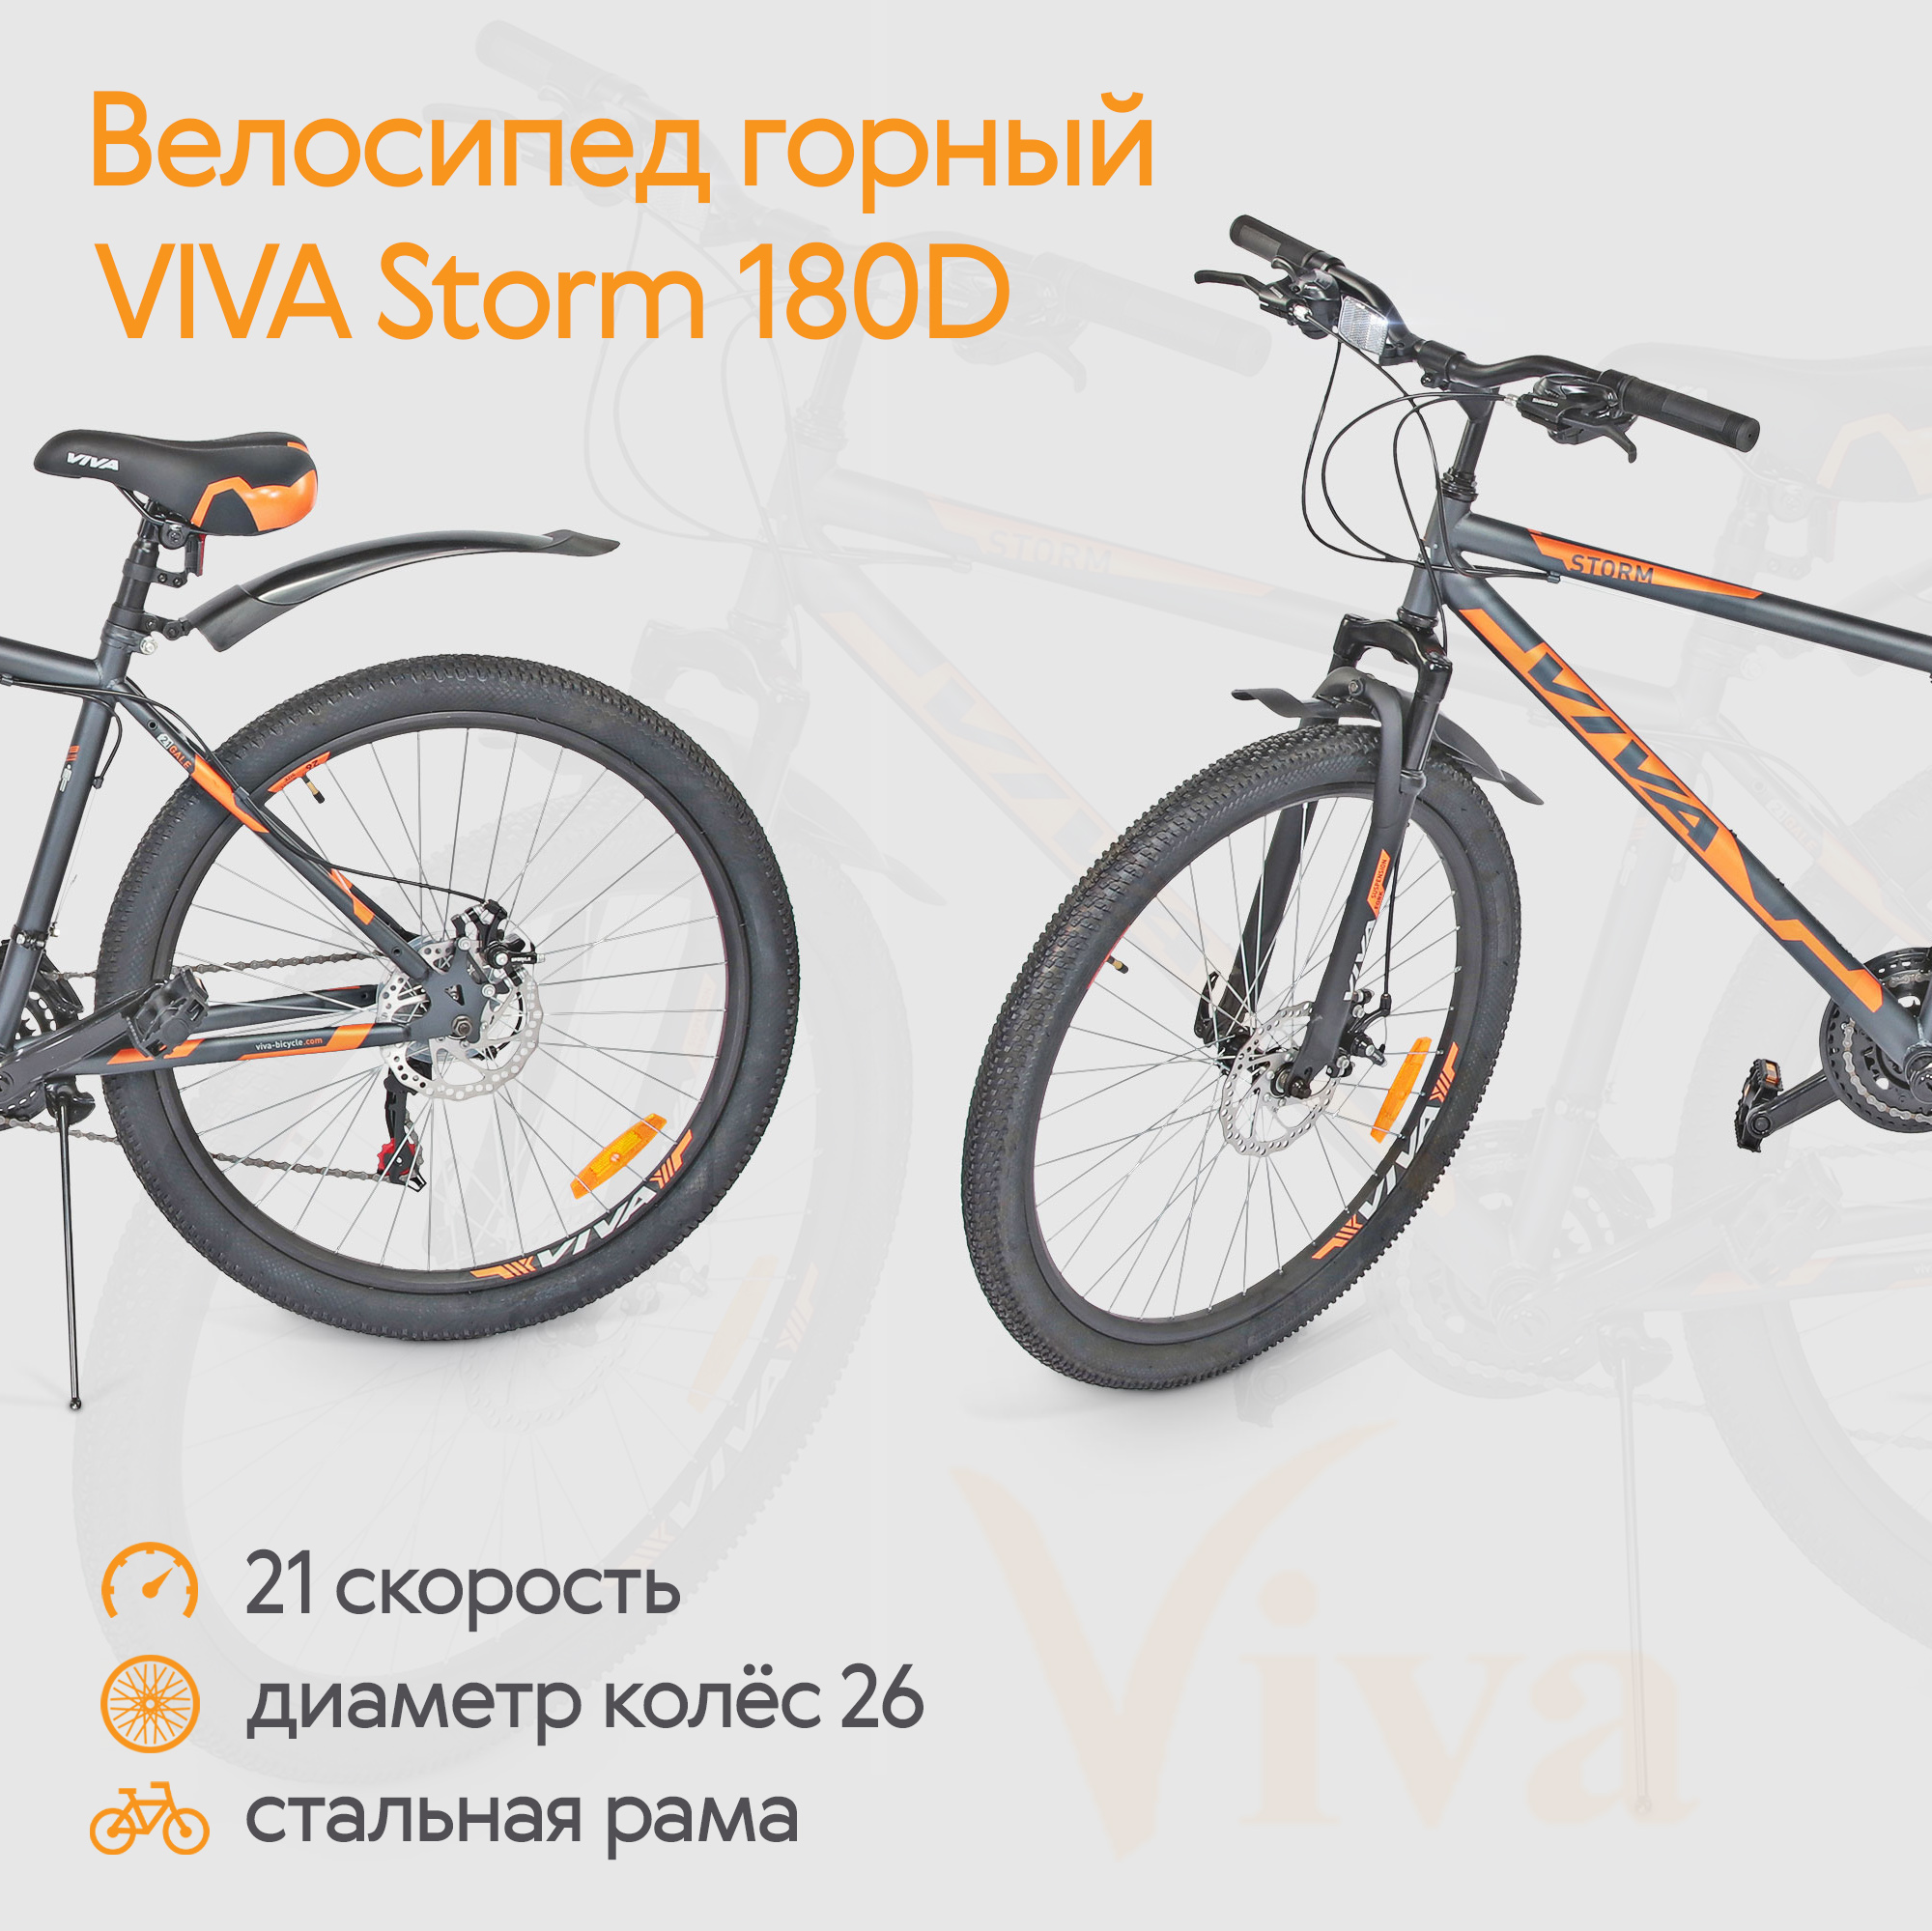 Велосипед горный VIVA Storm 180D, 21 скорость, диаметр колес 26, стальная рама, оранжевый, размер 26 Shimano Tourney, правая ST-EF417R(right) и левая ST-EF41L(left), Тормозная ручка под 2 пальца с отличной эргономикой, с оптического дисплеем передач. PP MTB light Передний 3 скорости + задний Shimano Tourney - фото 2